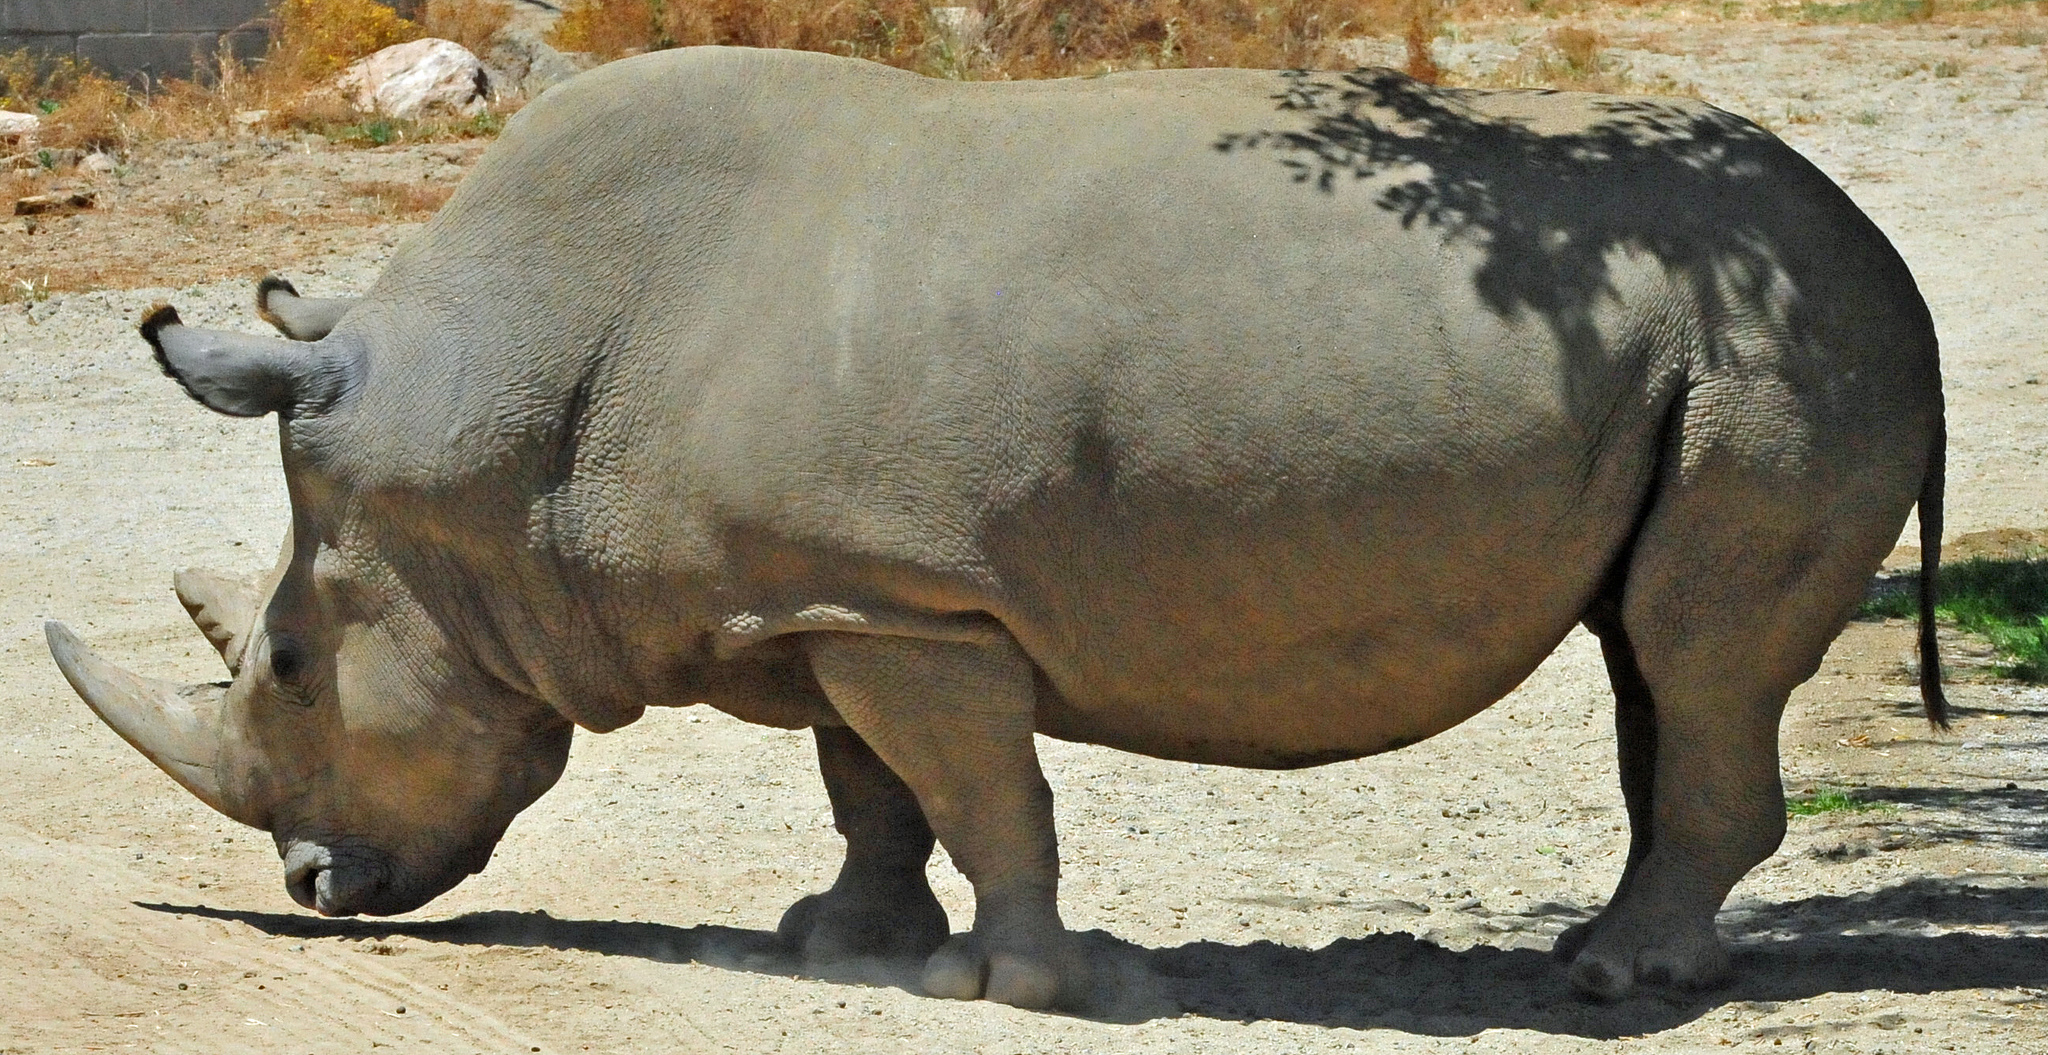 Angalifu the Northern White Rhinoceros male